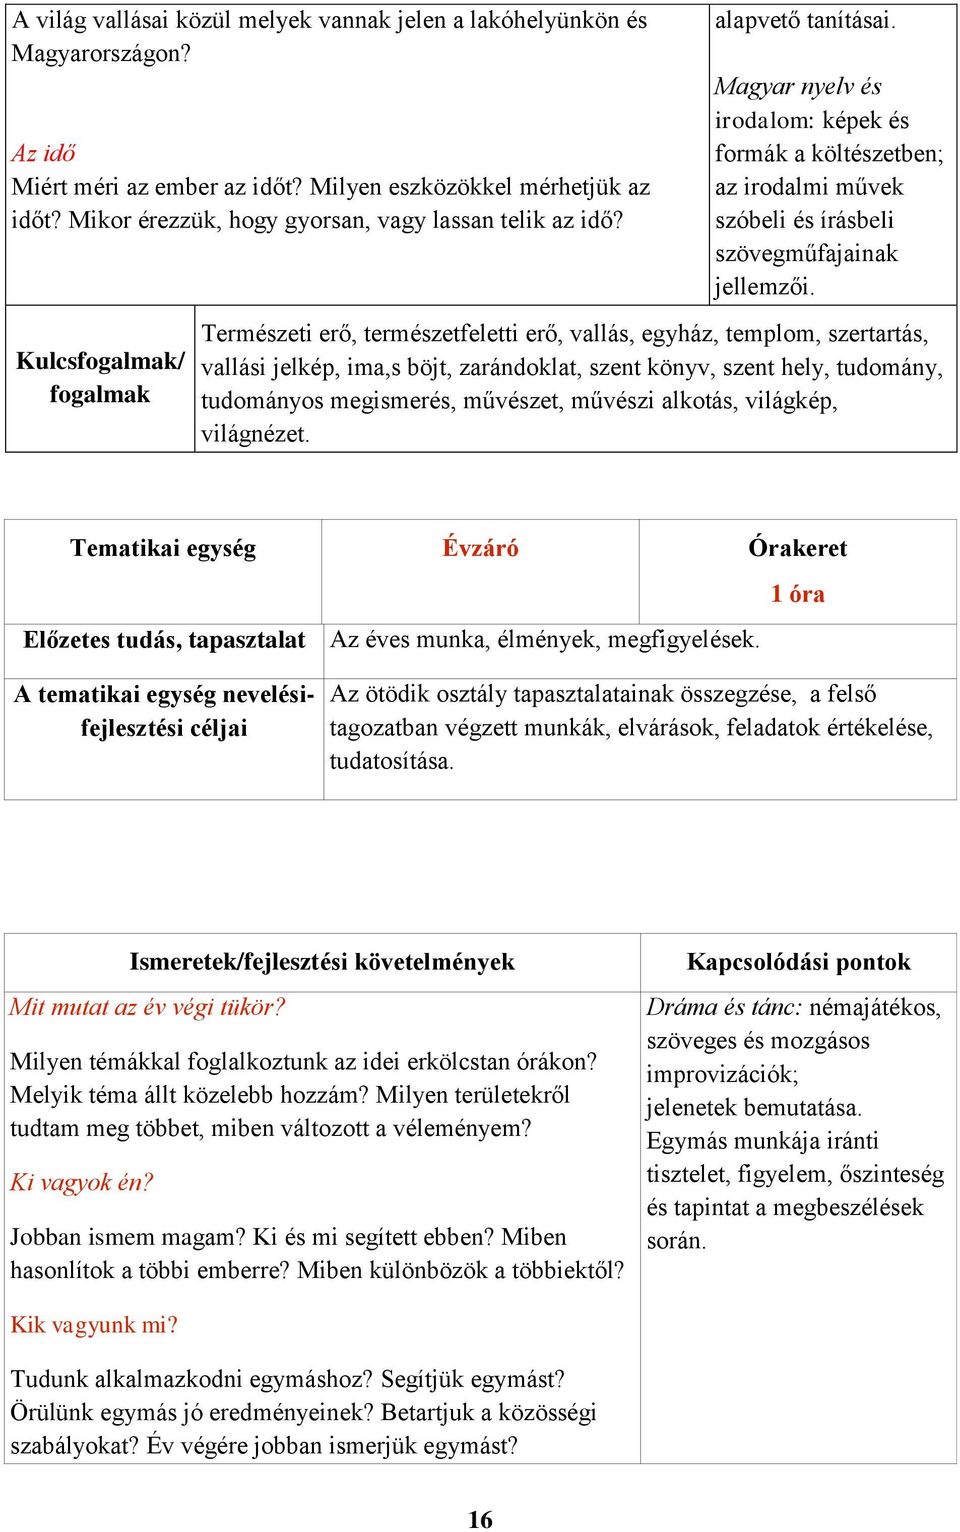 Magyar nyelv és irodalom: képek és formák a költészetben; az irodalmi művek szóbeli és írásbeli szövegműfajainak jellemzői.